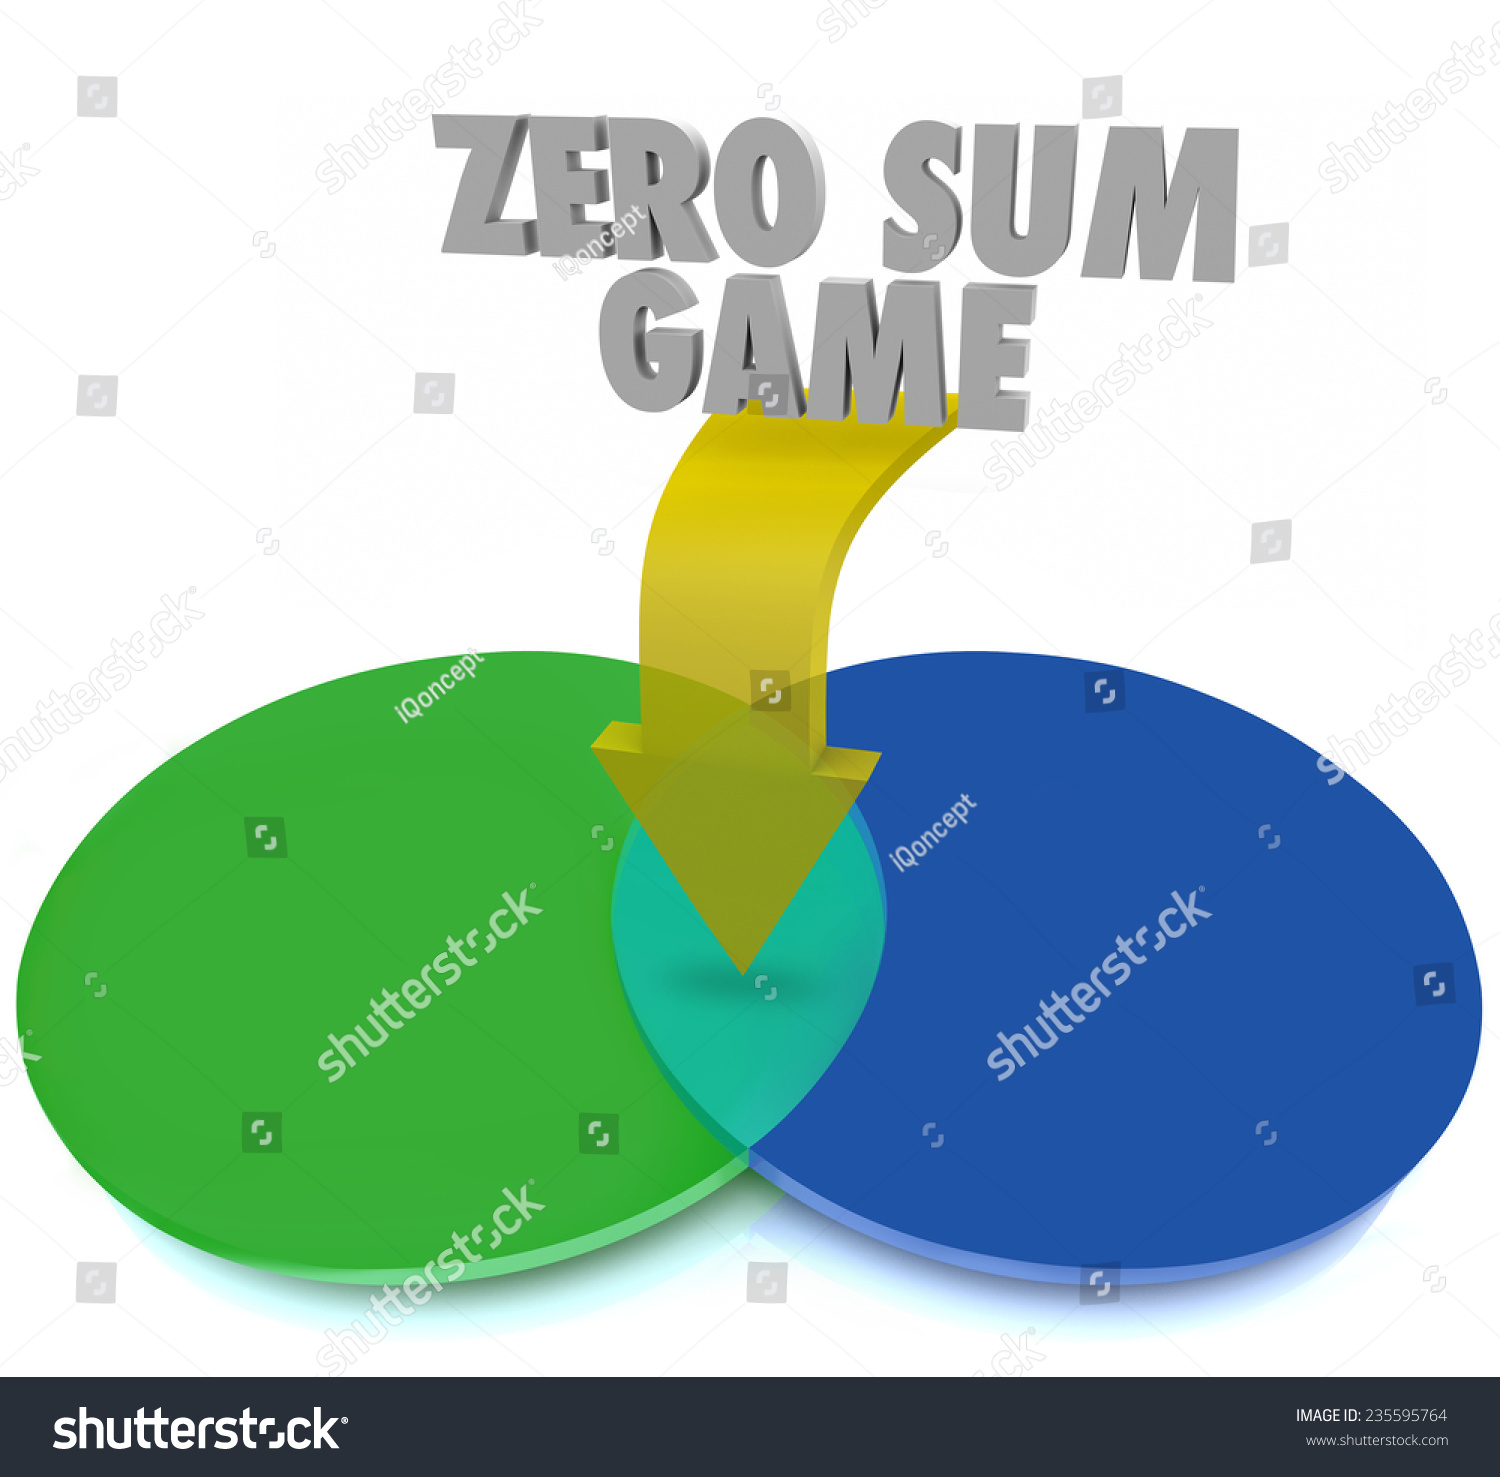 Is stock zero sum game